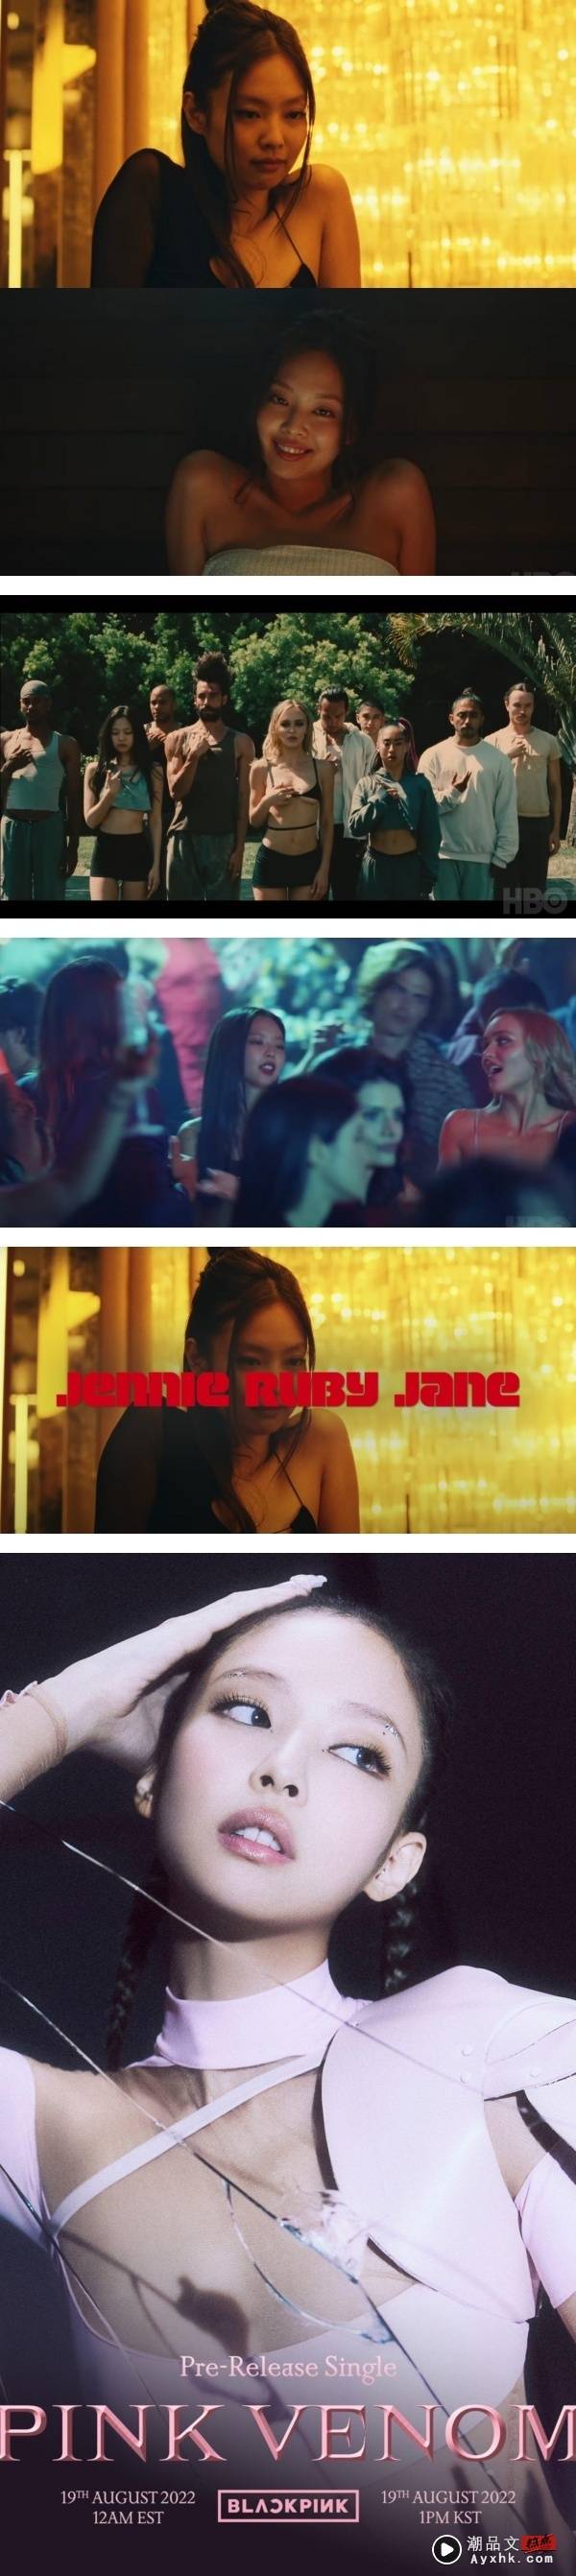 Jennie好莱坞演员处女秀来了！新造型曝光…露出诡异笑容！ 娱乐资讯 图2张